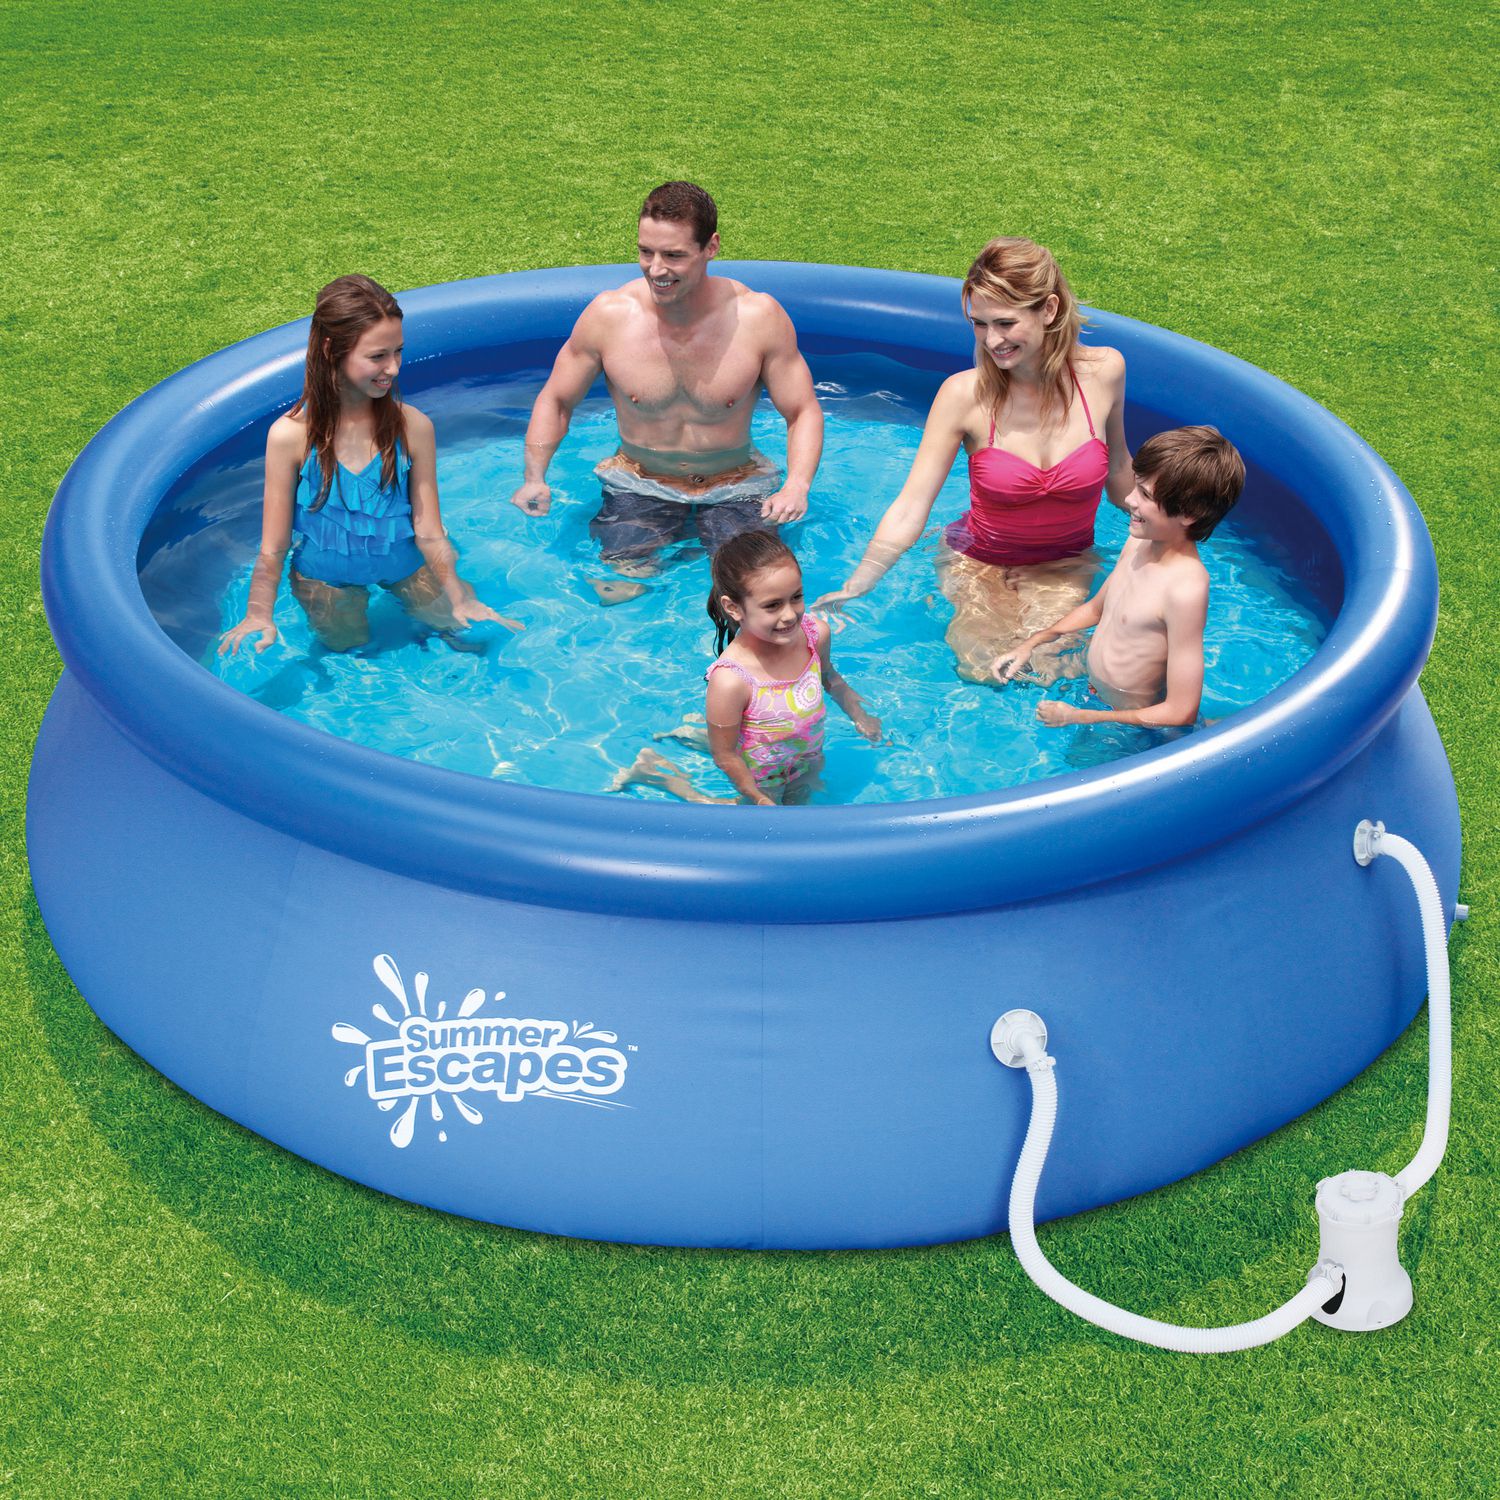 Summer Escapes™ 10'x30" Quick Set® Ring Kids Pool Set | Walmart Canada